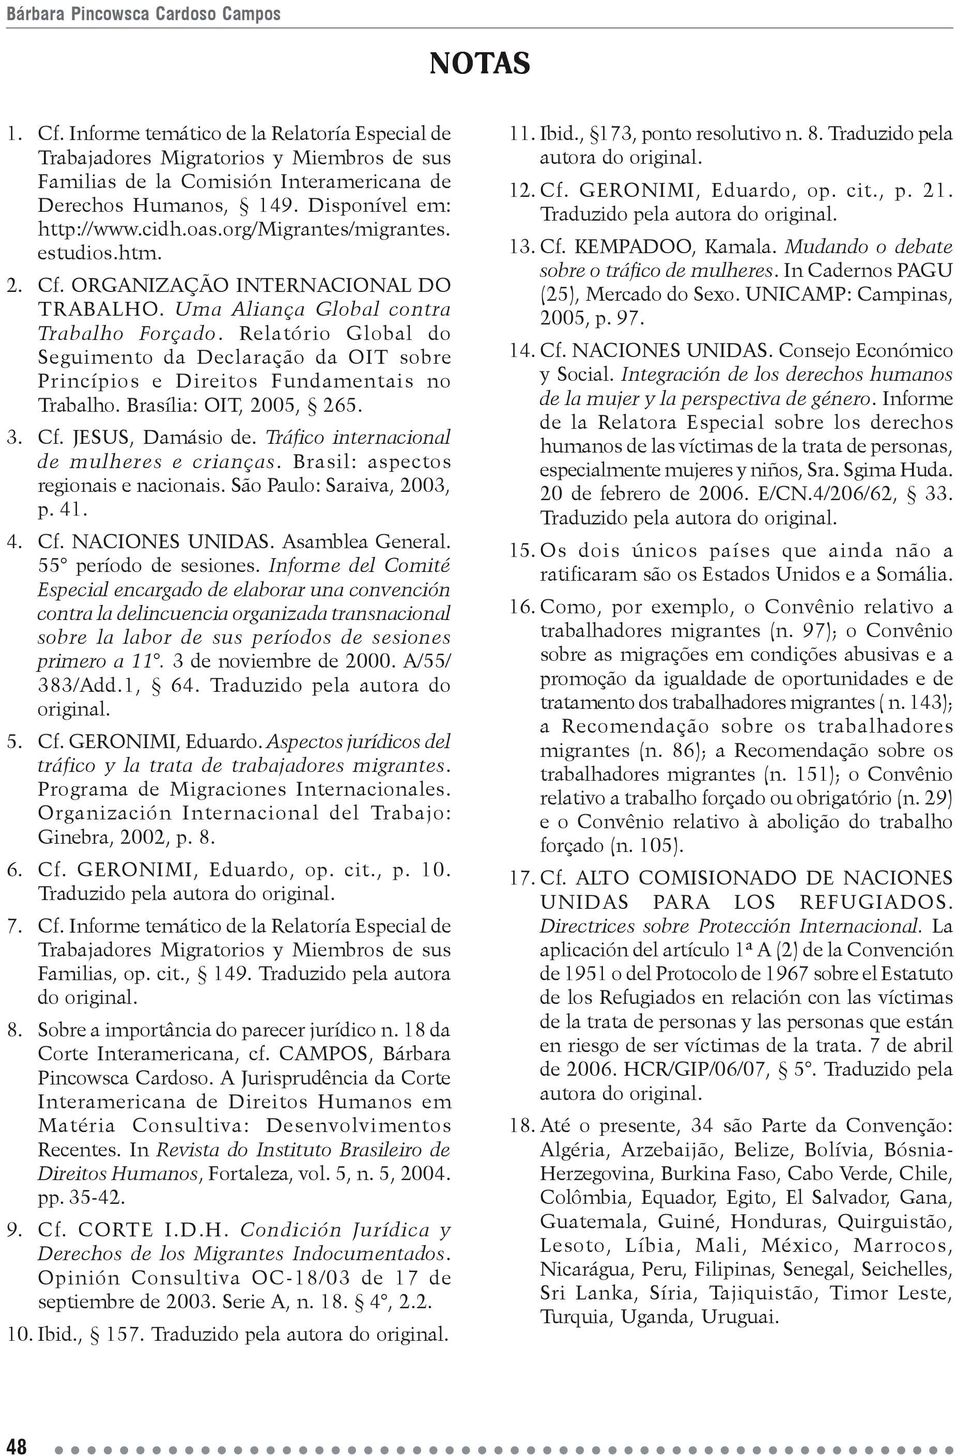 Relatório Global do Seguimento da Declaração da OIT sobre Princípios e Direitos Fundamentais no Trabalho. Brasília: OIT, 2005, 265. 3. Cf. JESUS, Damásio de.